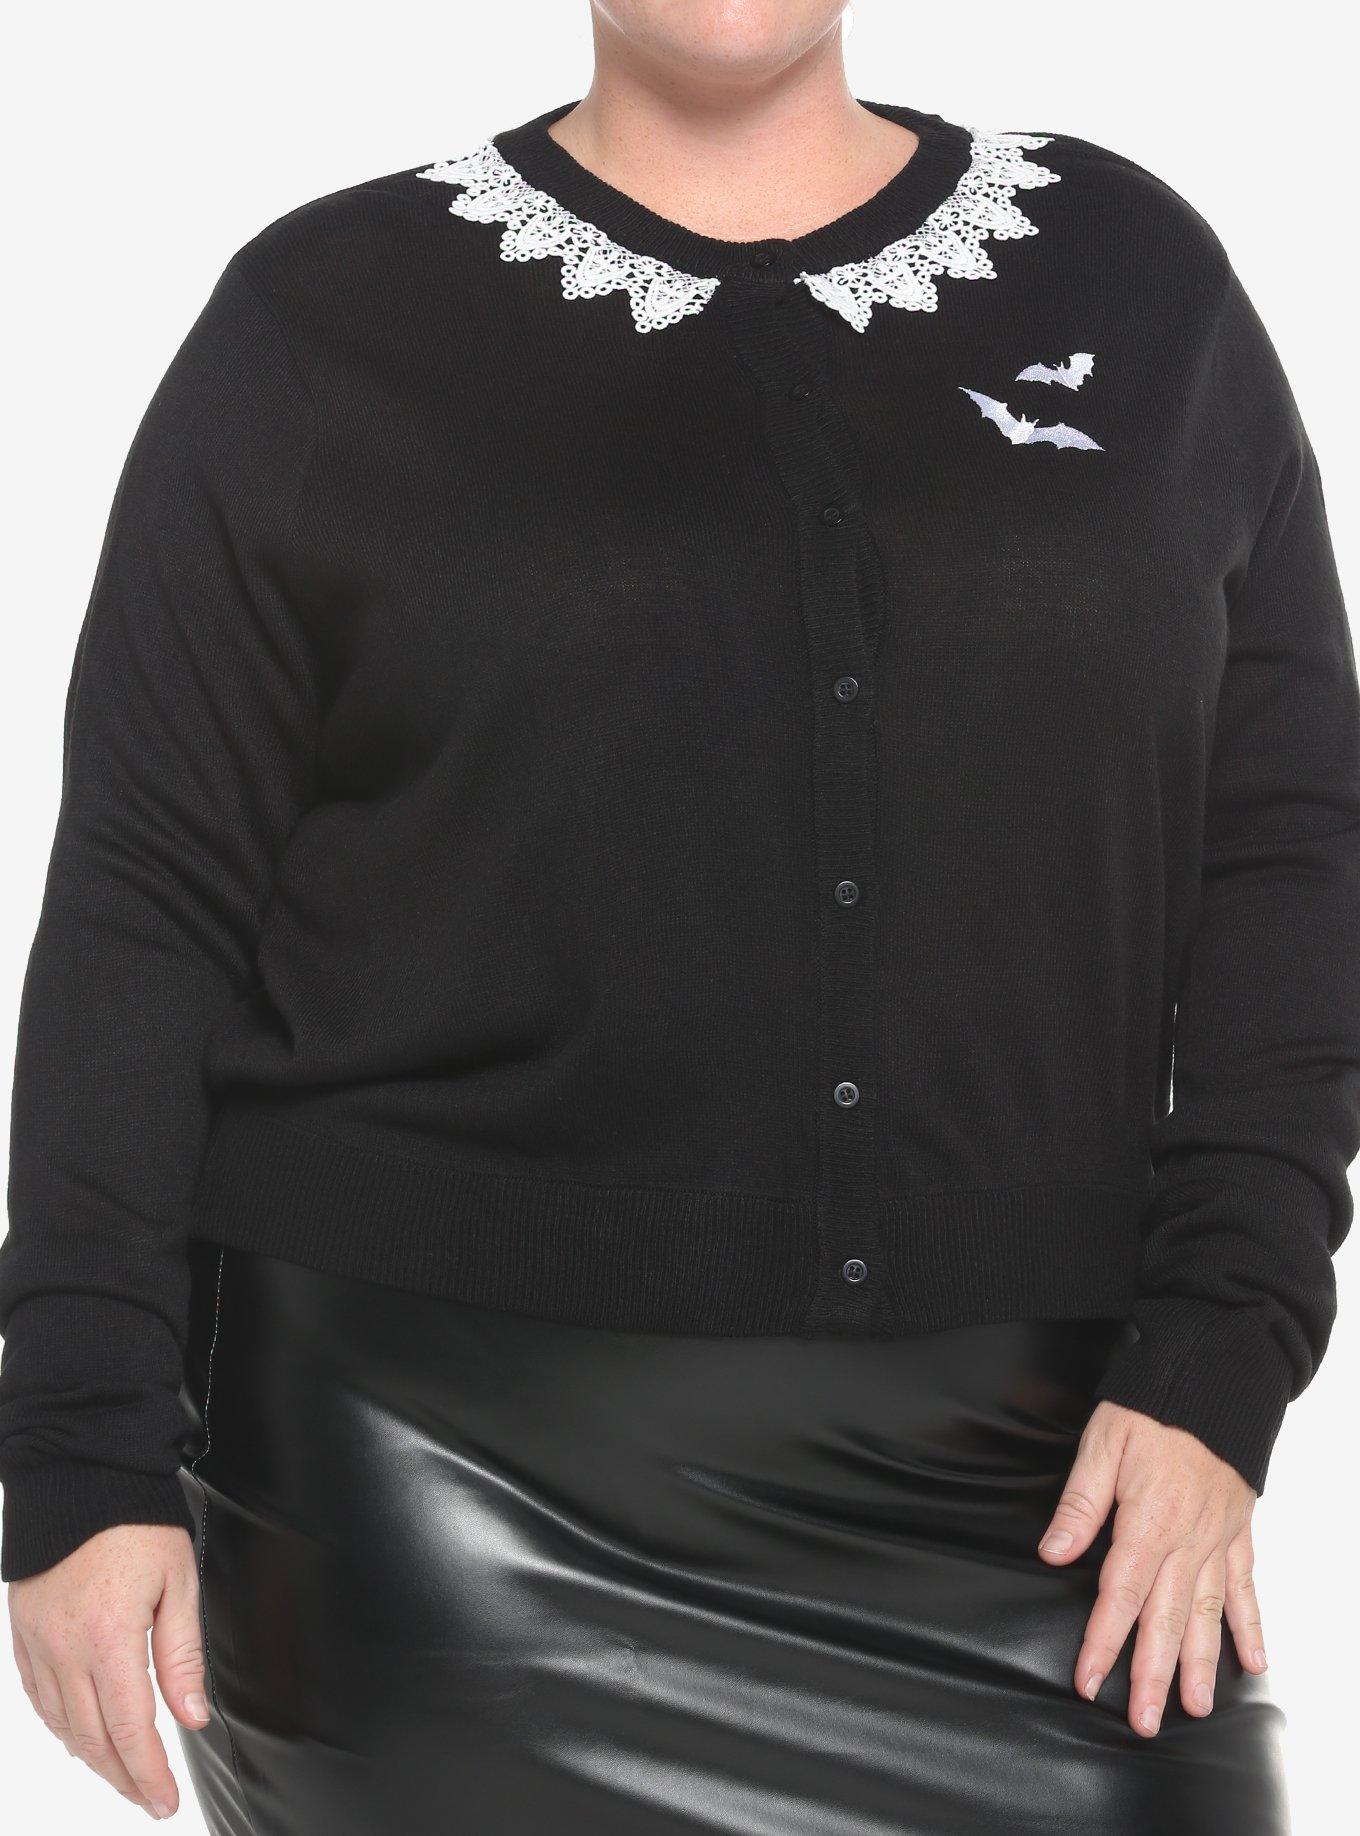 Bats & Lace Girls Crop Cardigan Plus Size, BLACK, hi-res